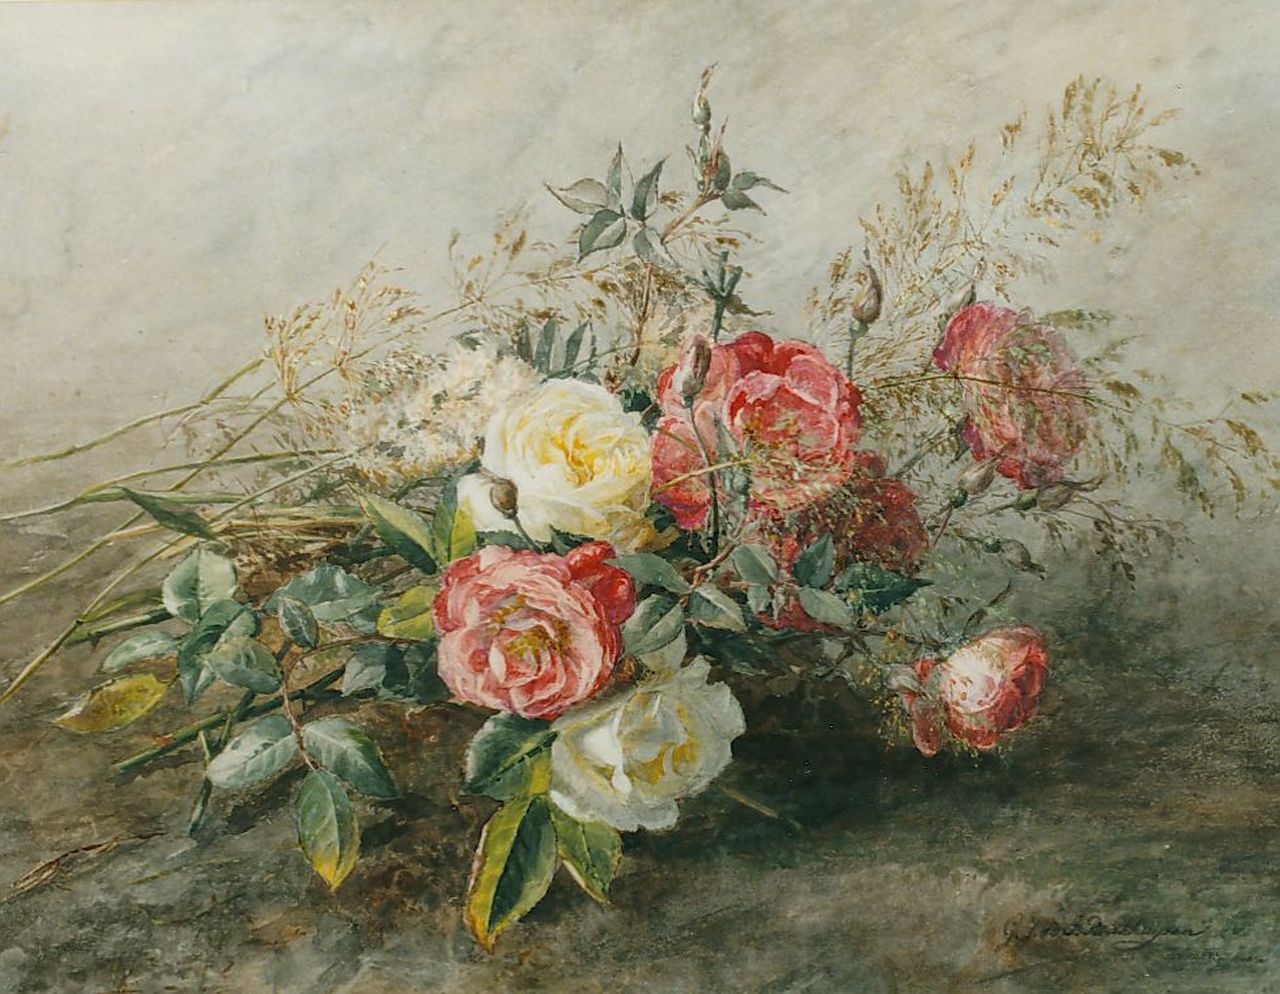 Sande Bakhuyzen G.J. van de | 'Gerardine' Jacoba van de Sande Bakhuyzen, Bouquet of roses, Aquarell auf Papier 36,0 x 46,0 cm, signed l.r.